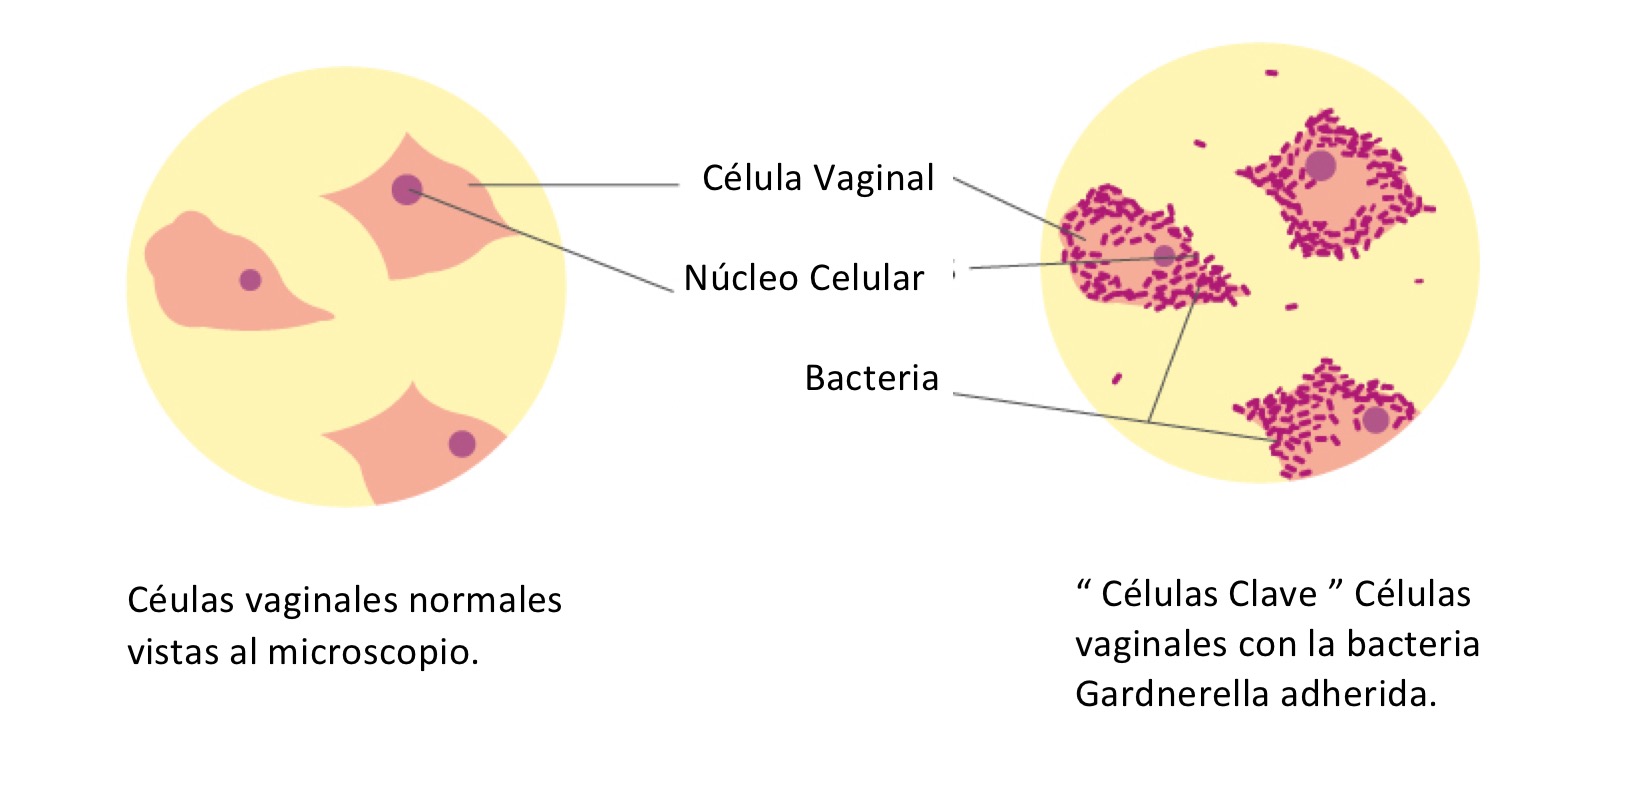 Células vaginales con la bacteria Gardnerella adherida